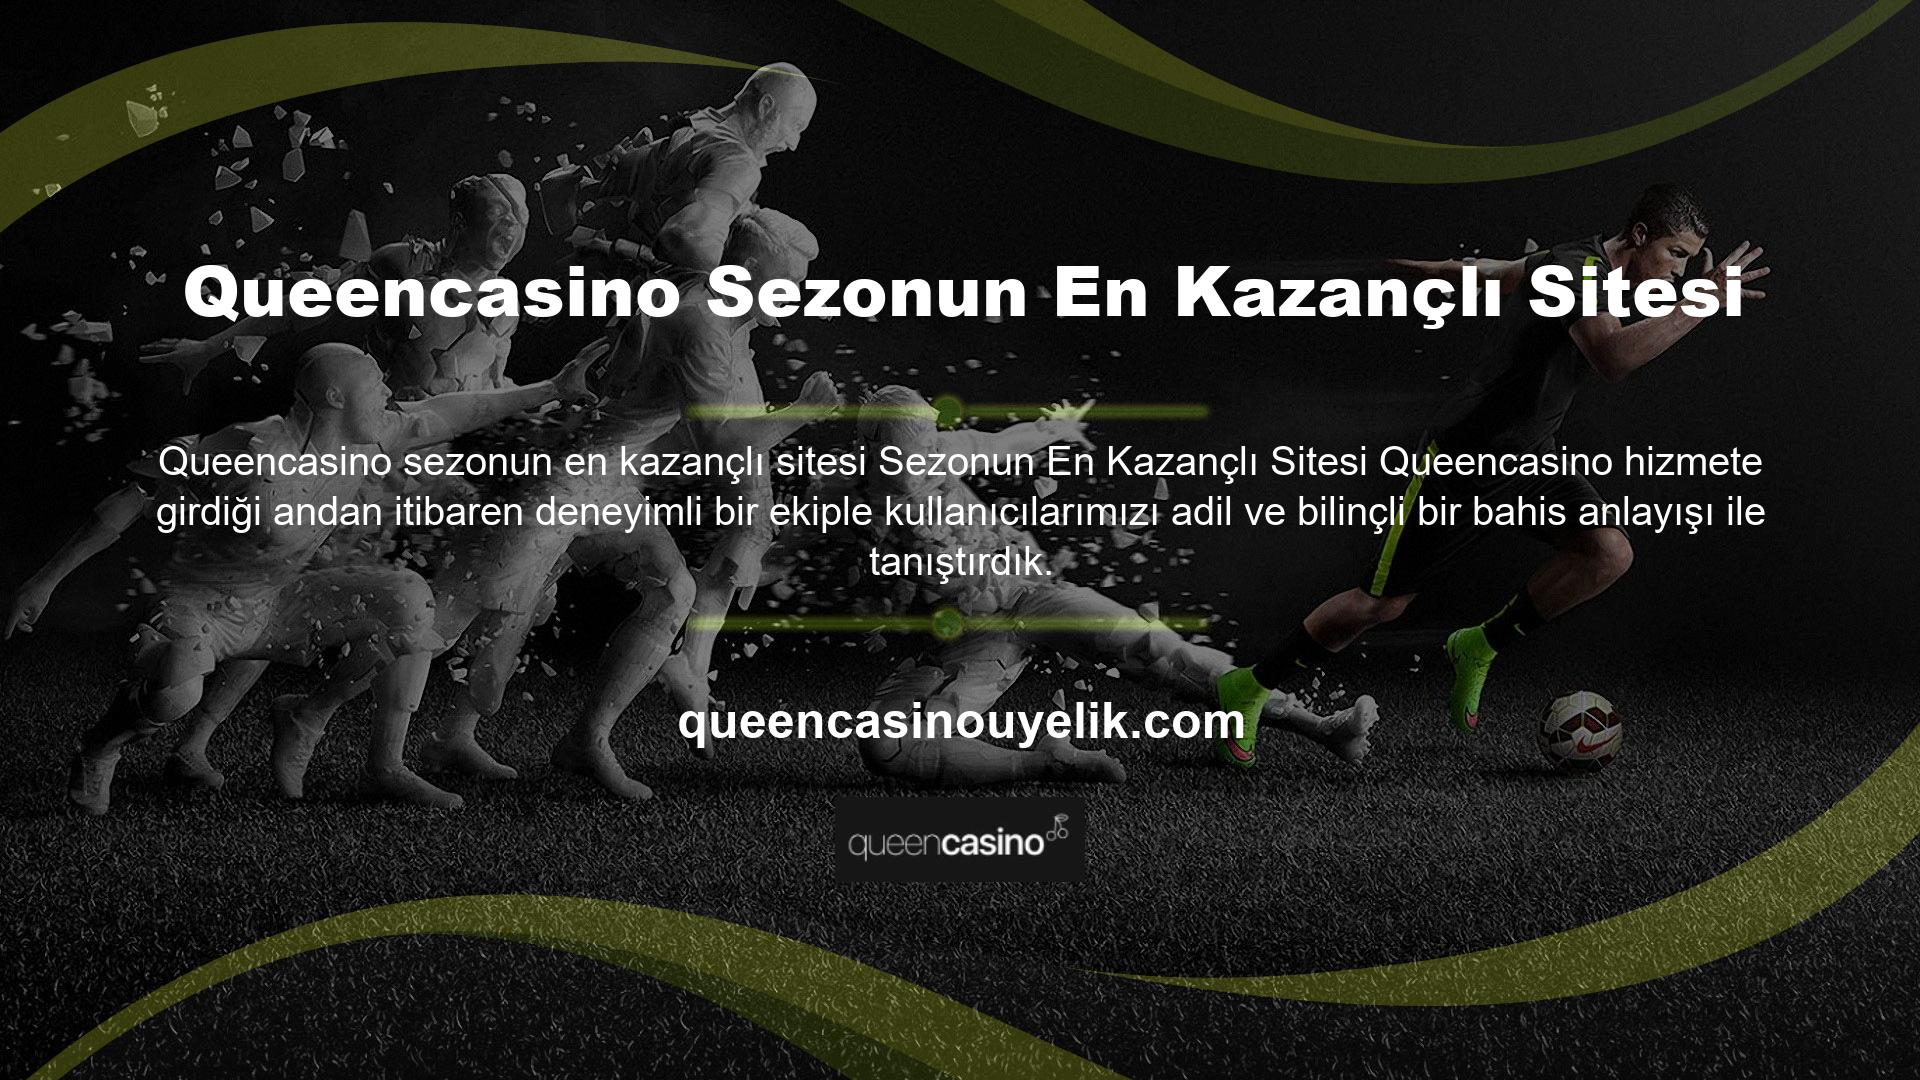 Queencasino sitesi, sunduğu, sezonun en çok kazandıran sitesi oldu